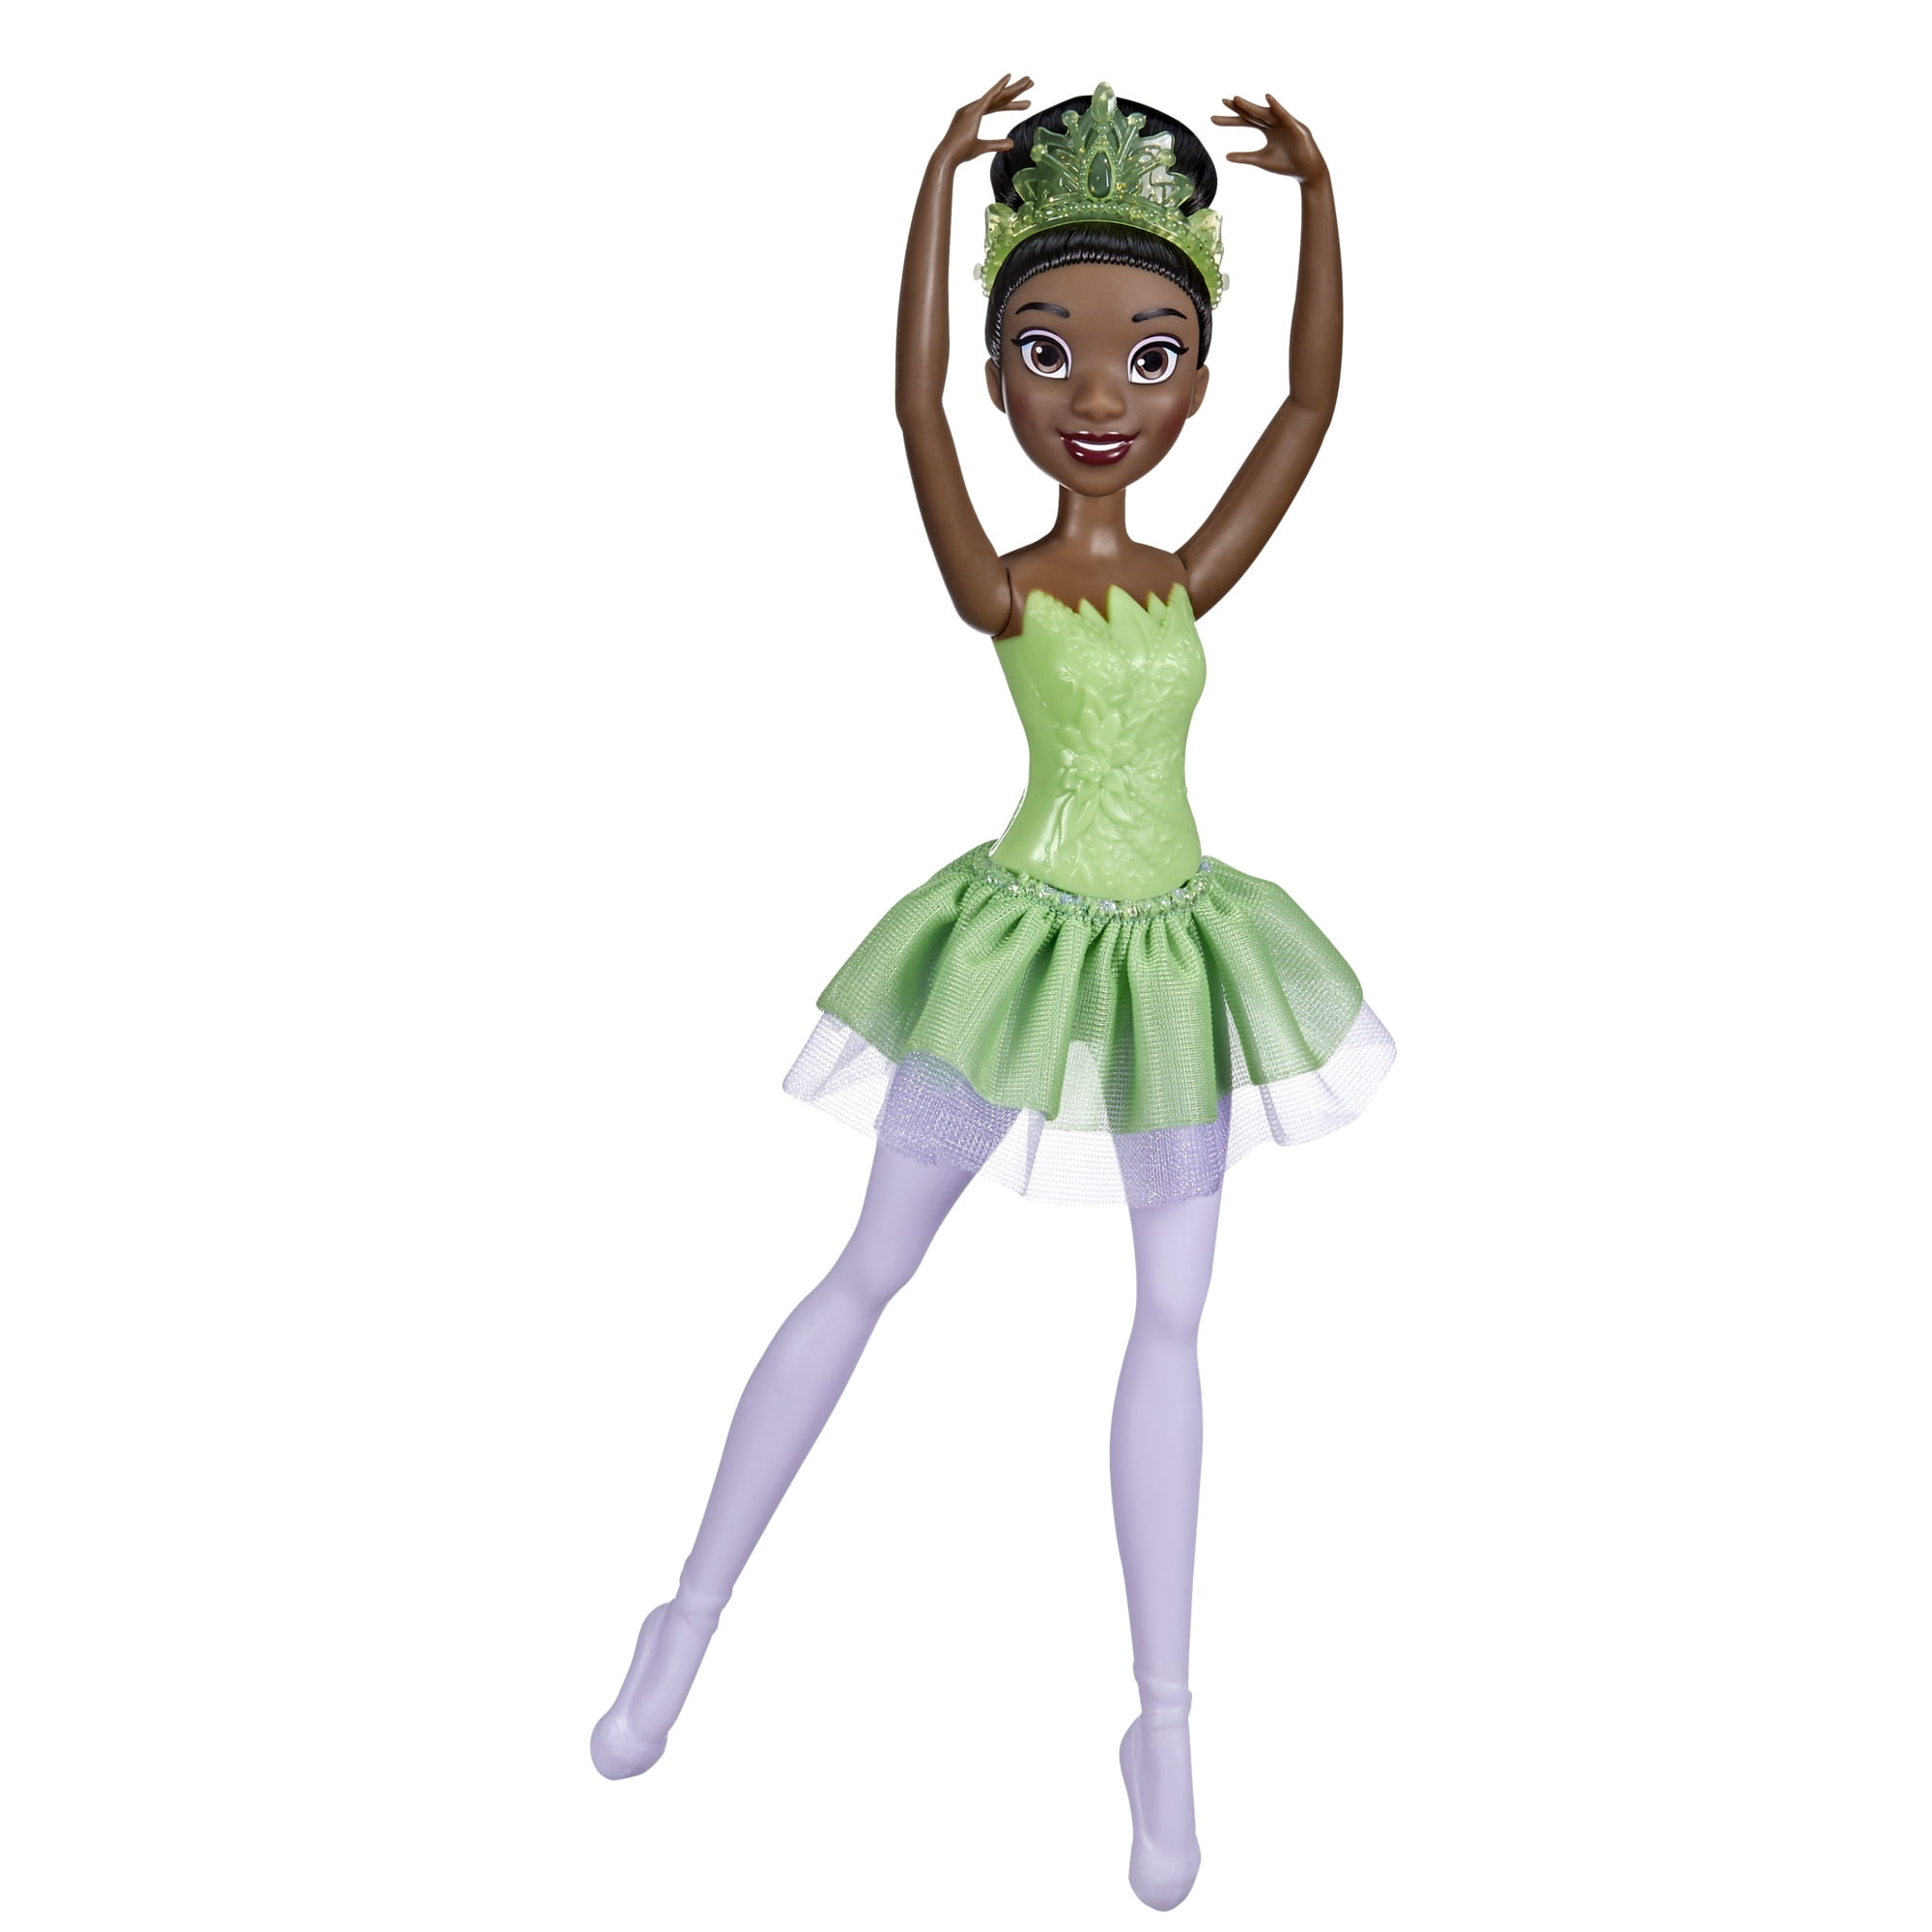 Disney Princess Ballerina Princess Tiana, Disney Princess Toy for Kids 3 Years Old and Up